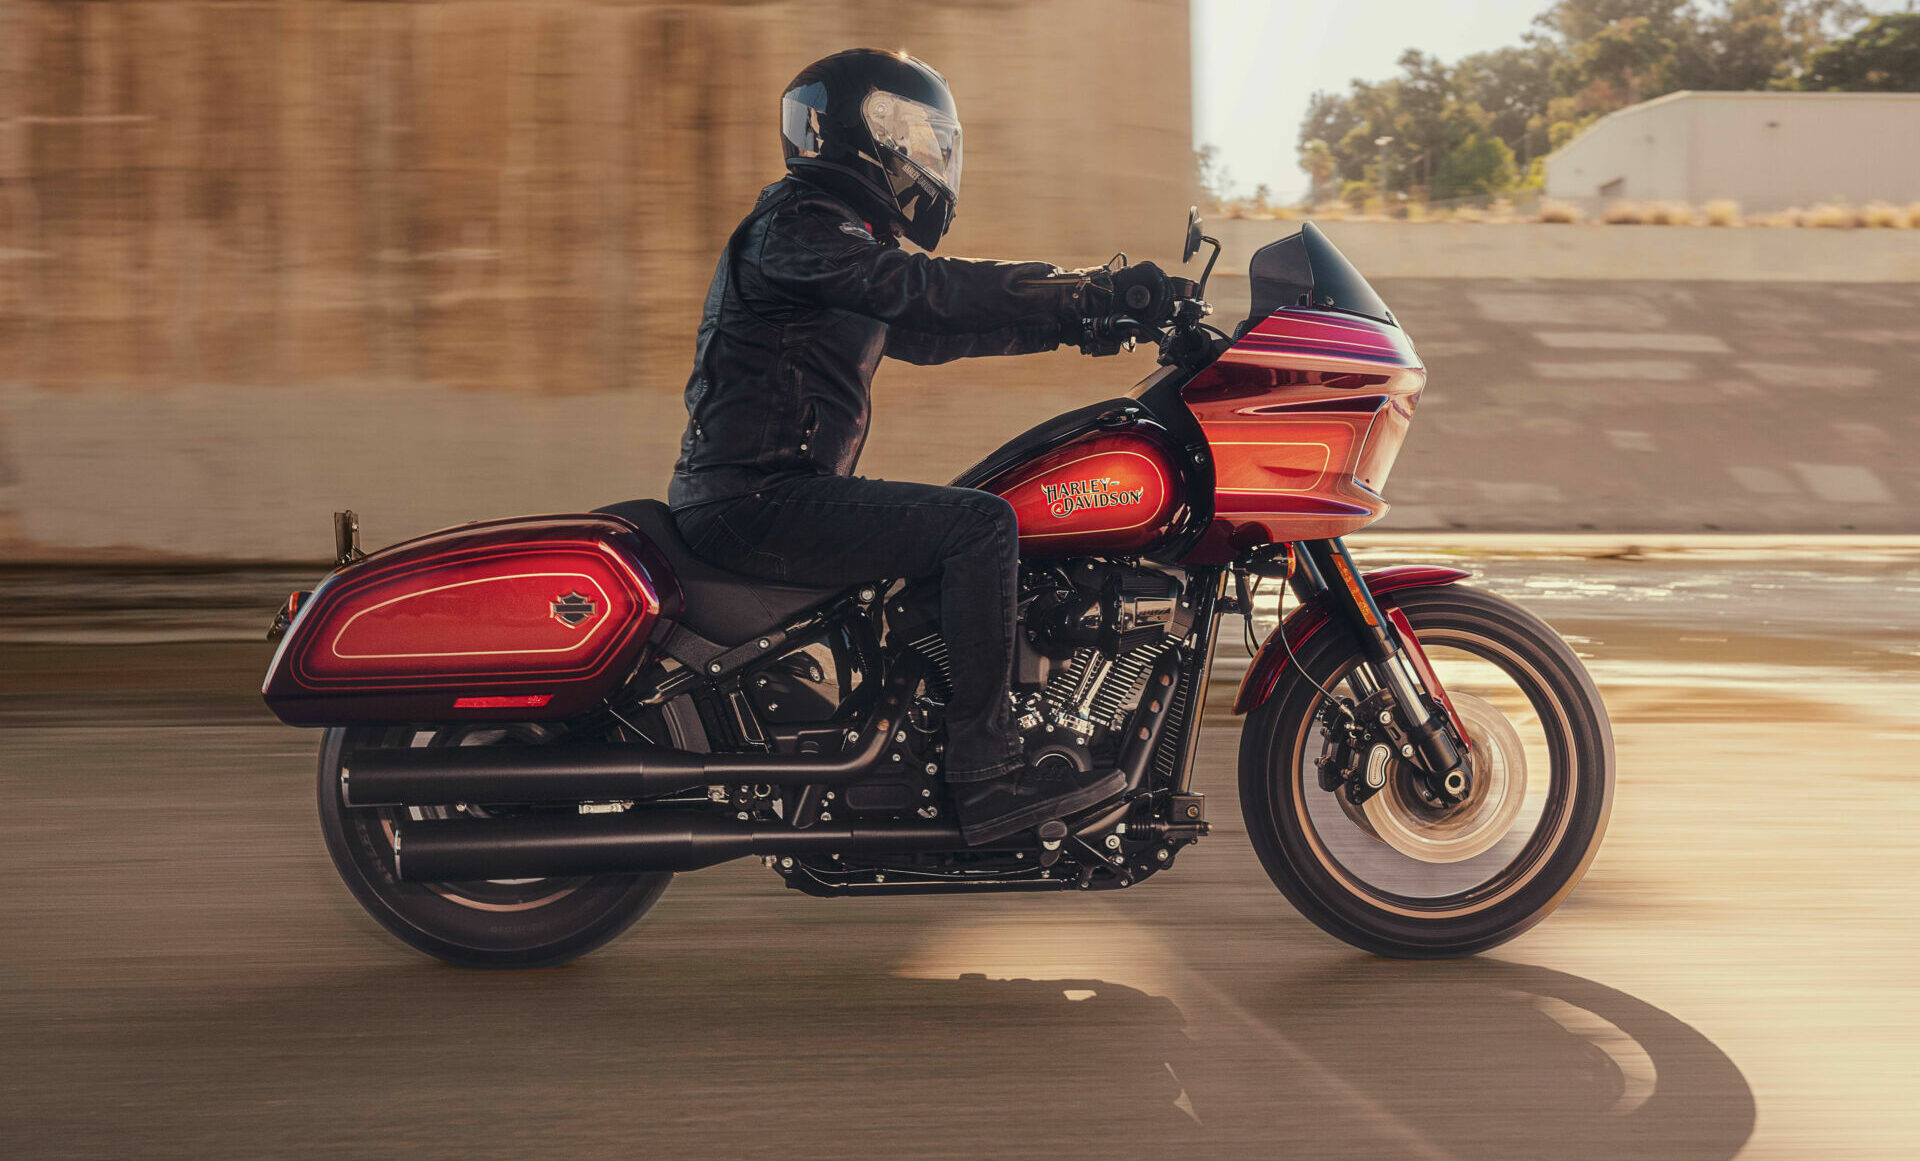 A Harley-Davidson Low Rider El Diablo. Photo courtesy Harley-Davidson.